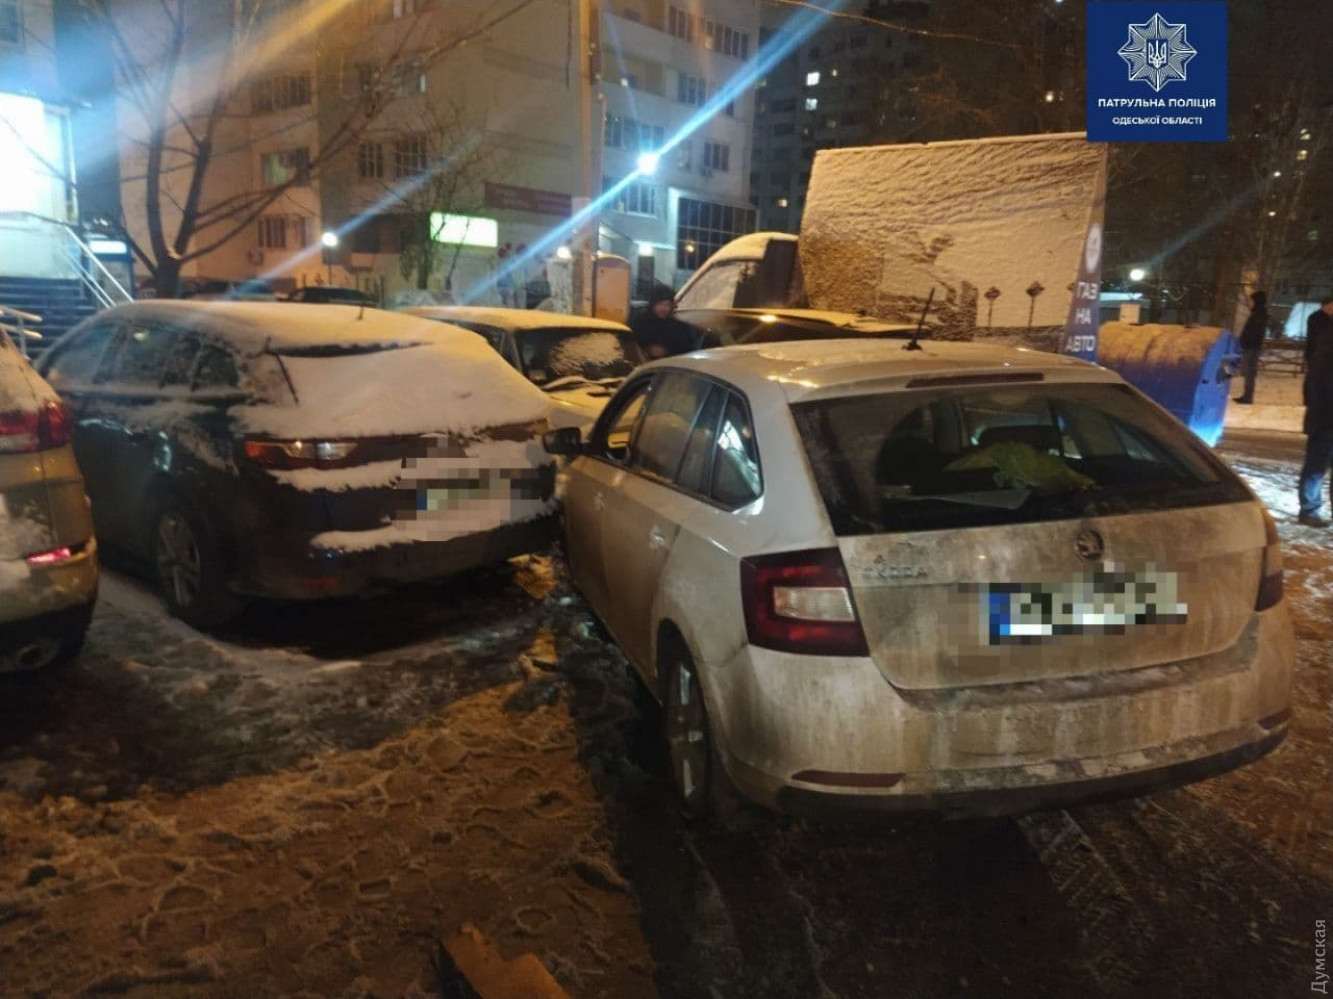 Пьяный водитель в Одессе изуродовал семь автомобилей - ФОТО — фото 1